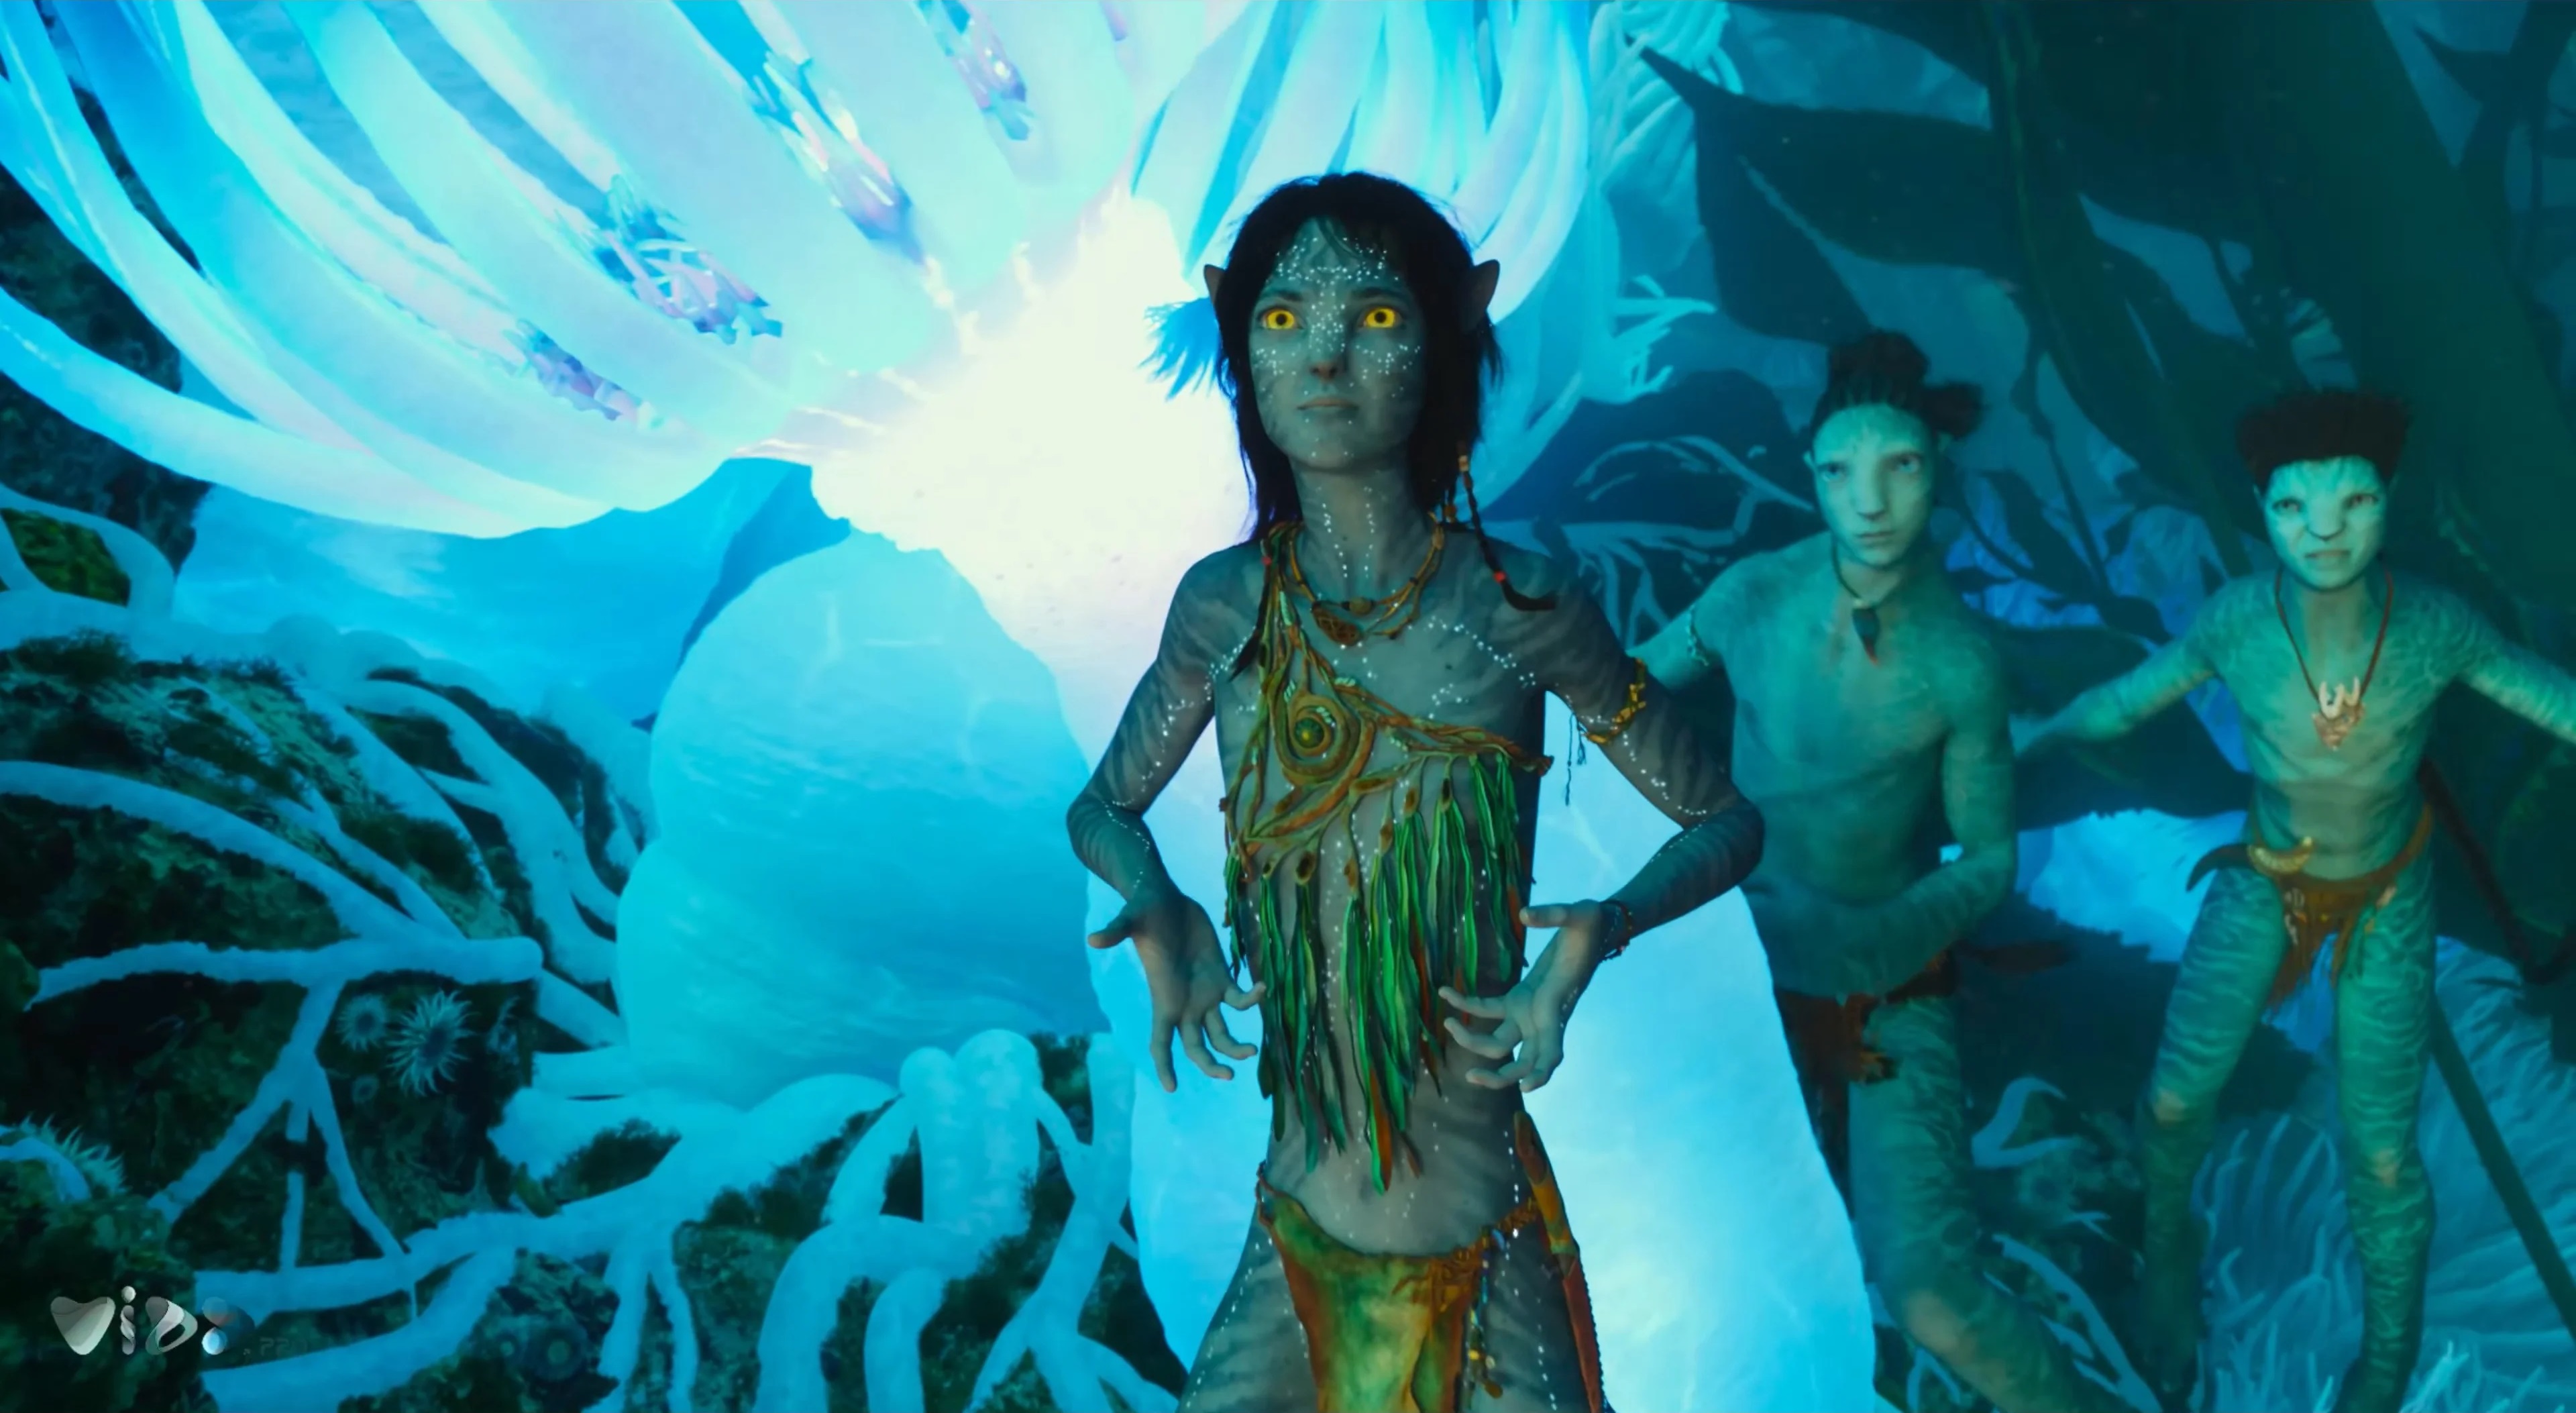 Stream The King's Avatar Season 2 OP - Glory Break by Gustrian 3